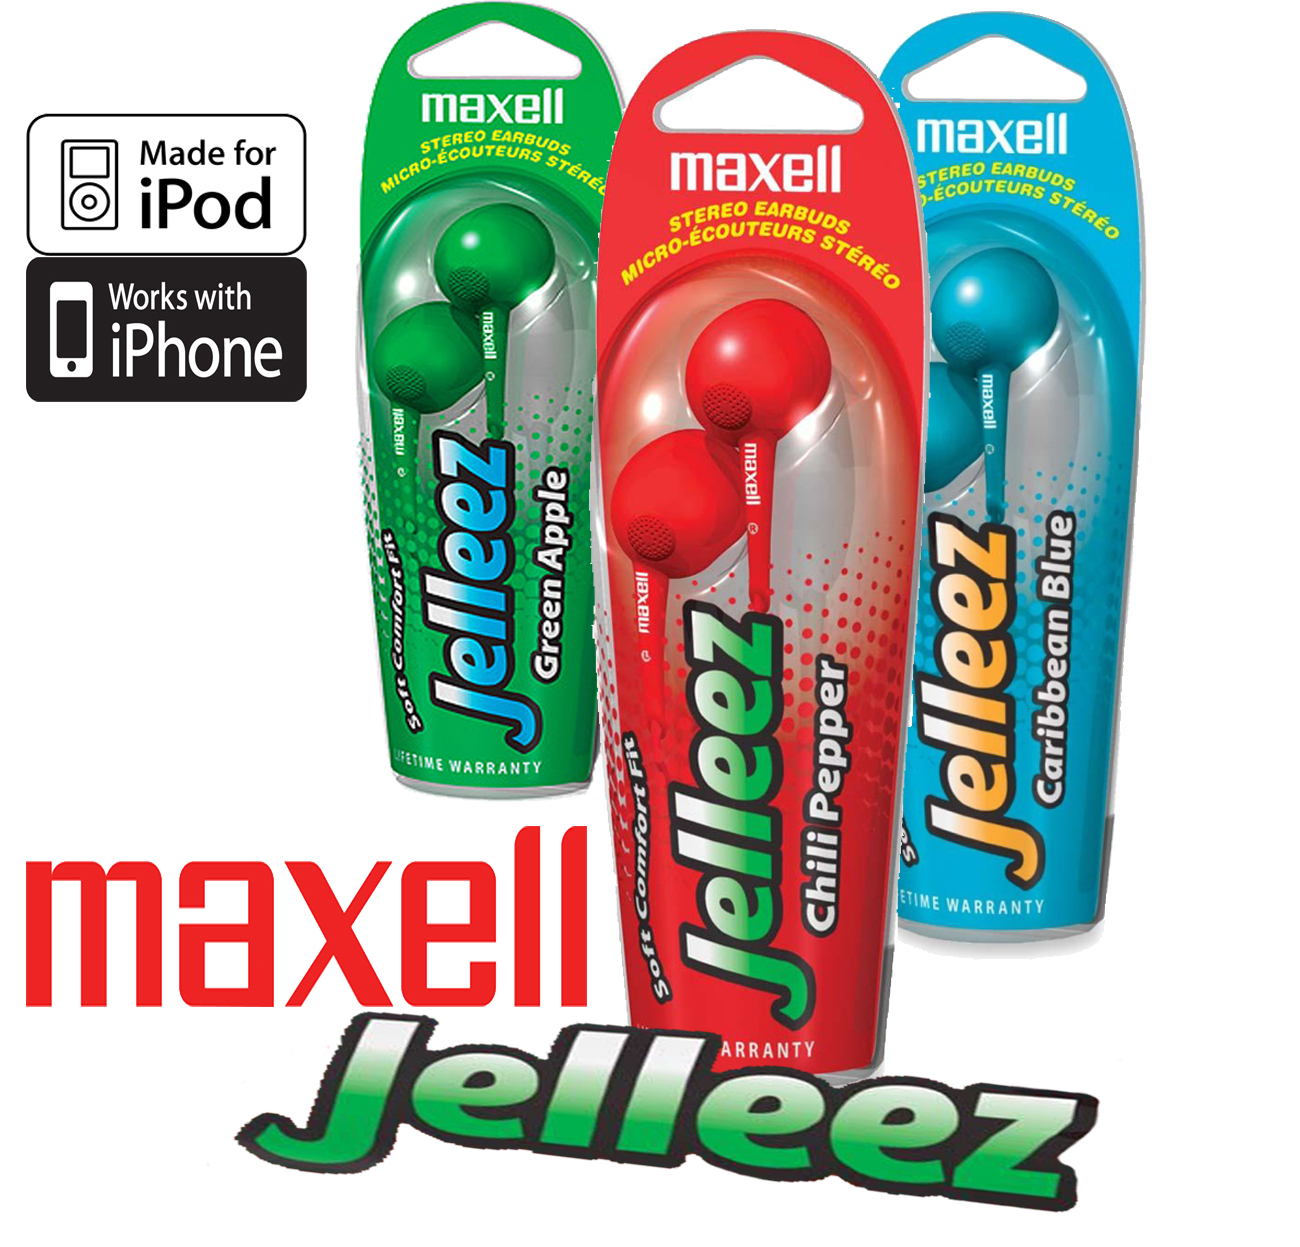 Today's Best Deal - Maxell Jelleez Stereo hoofdtelefoon(Blue)